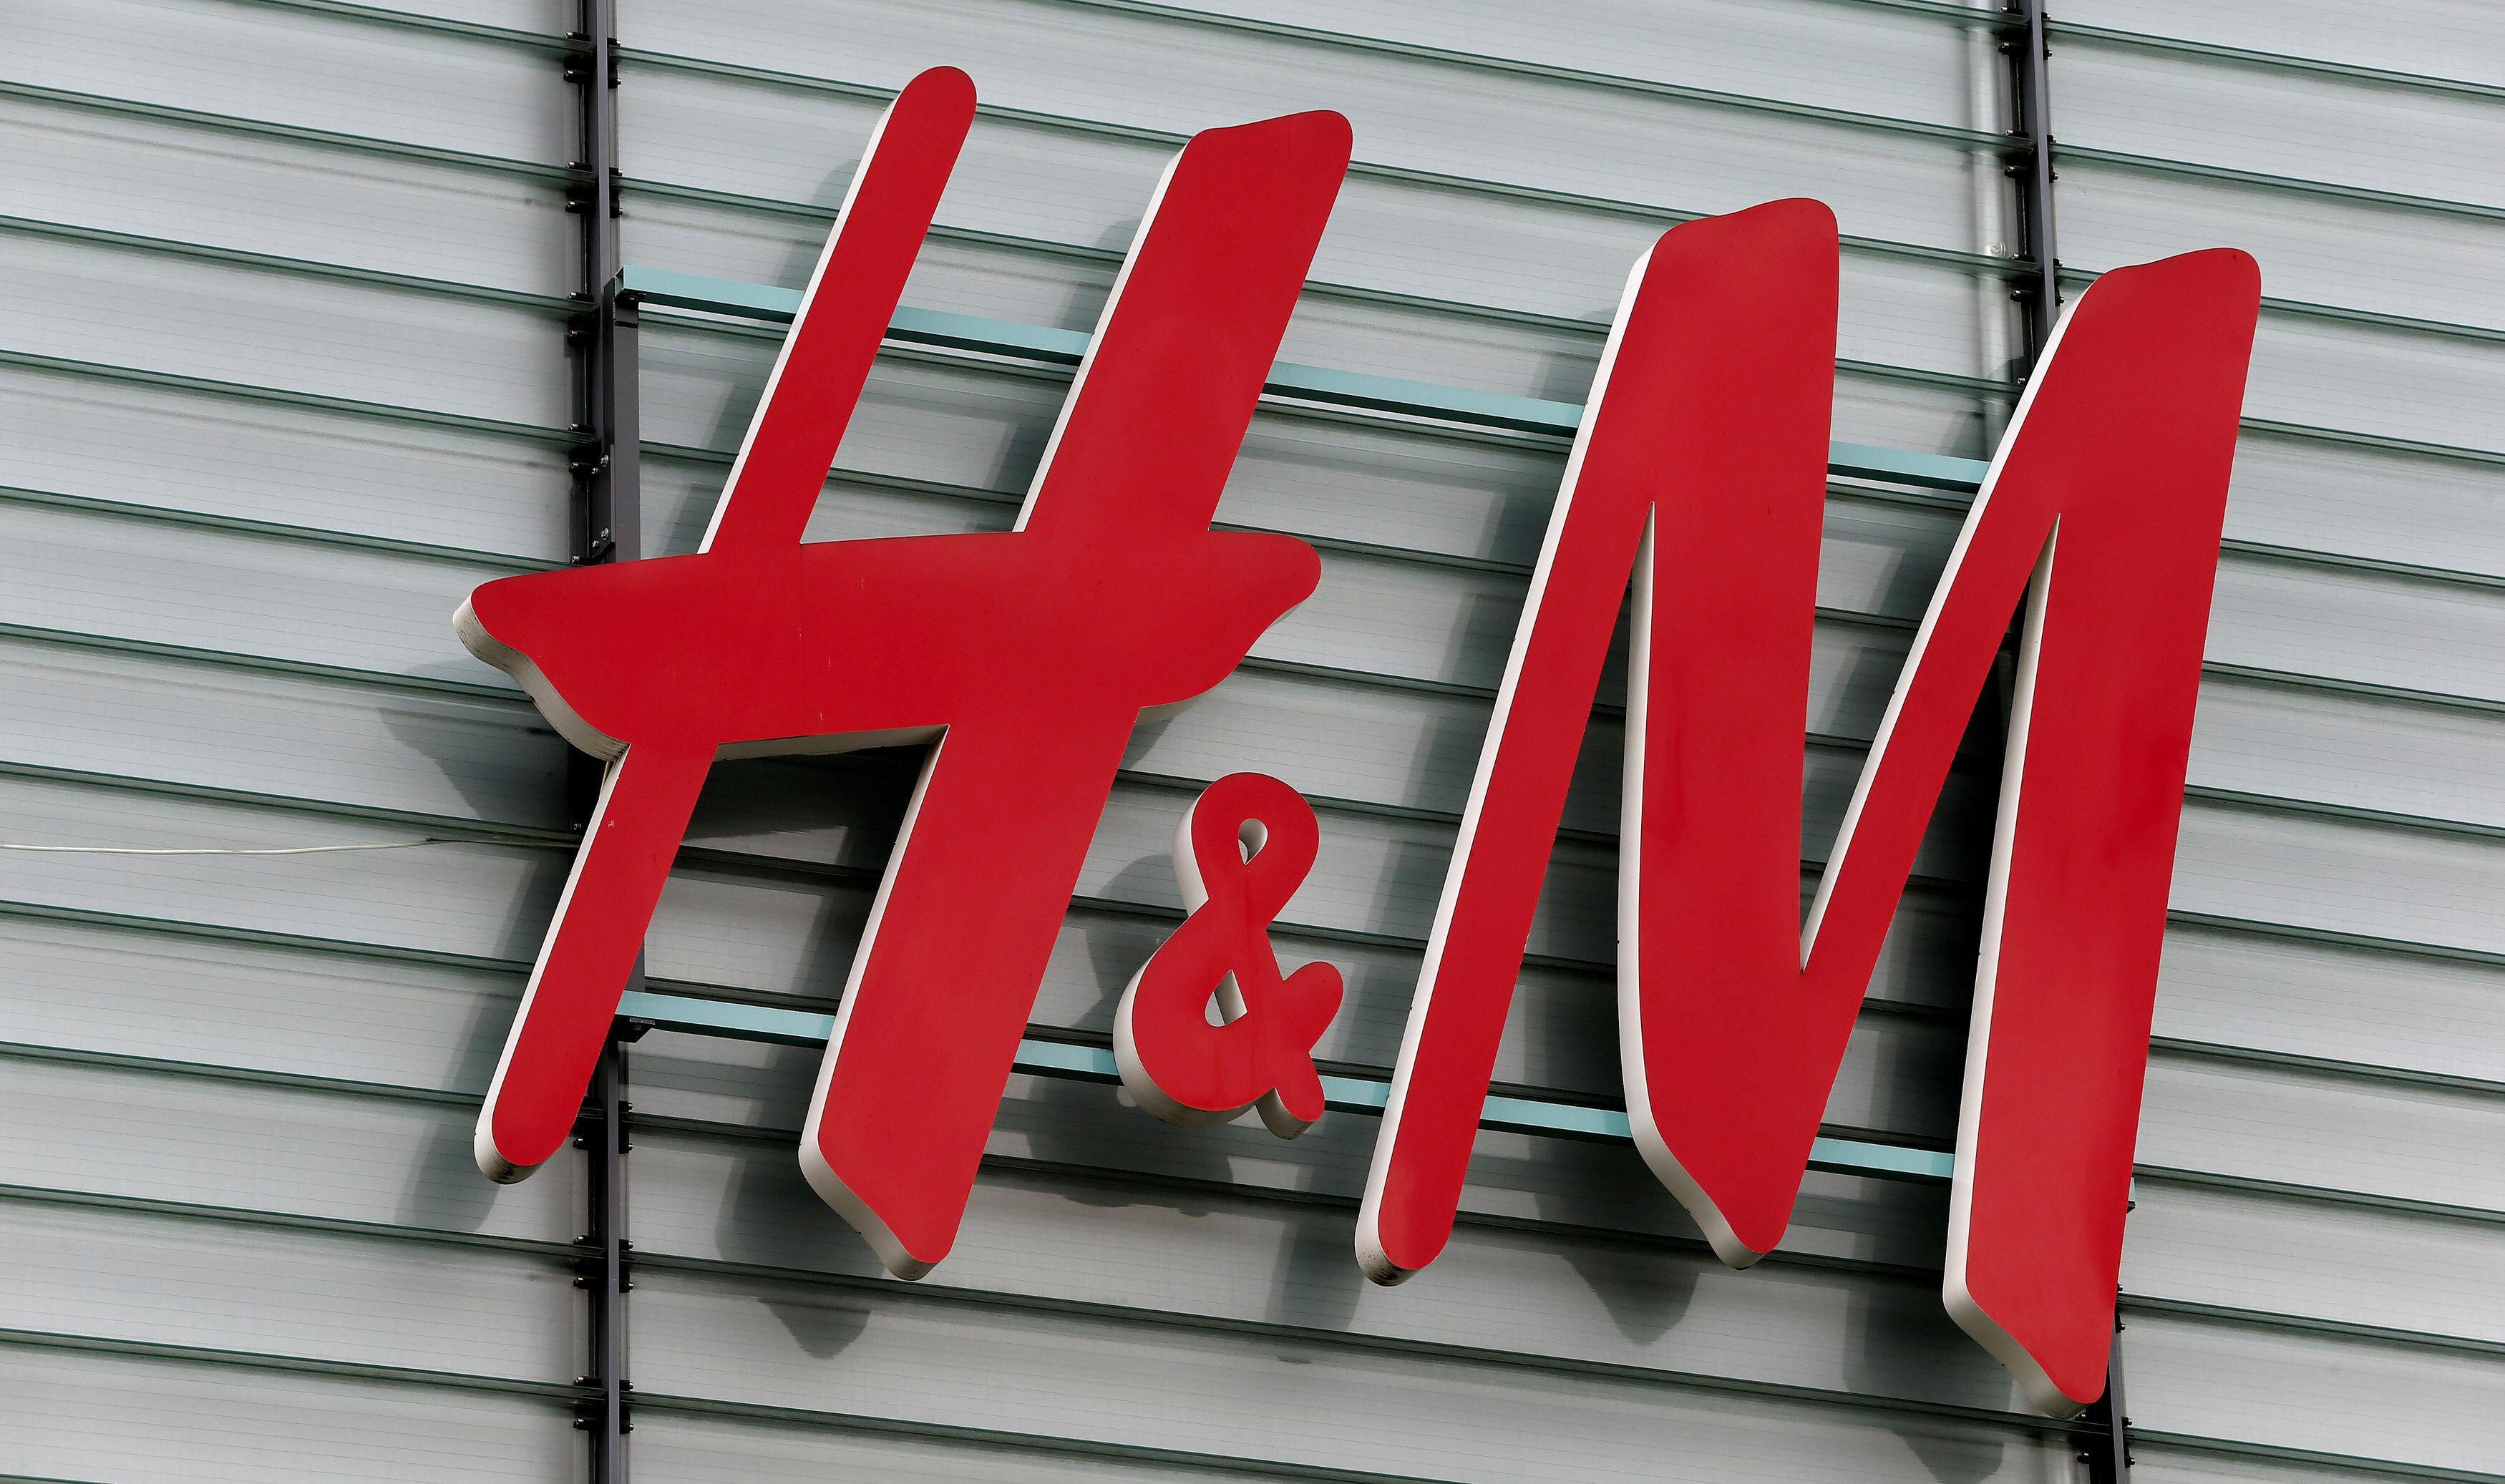 Gigante do varejo H&M anuncia lojas físicas e on-line no Brasil 